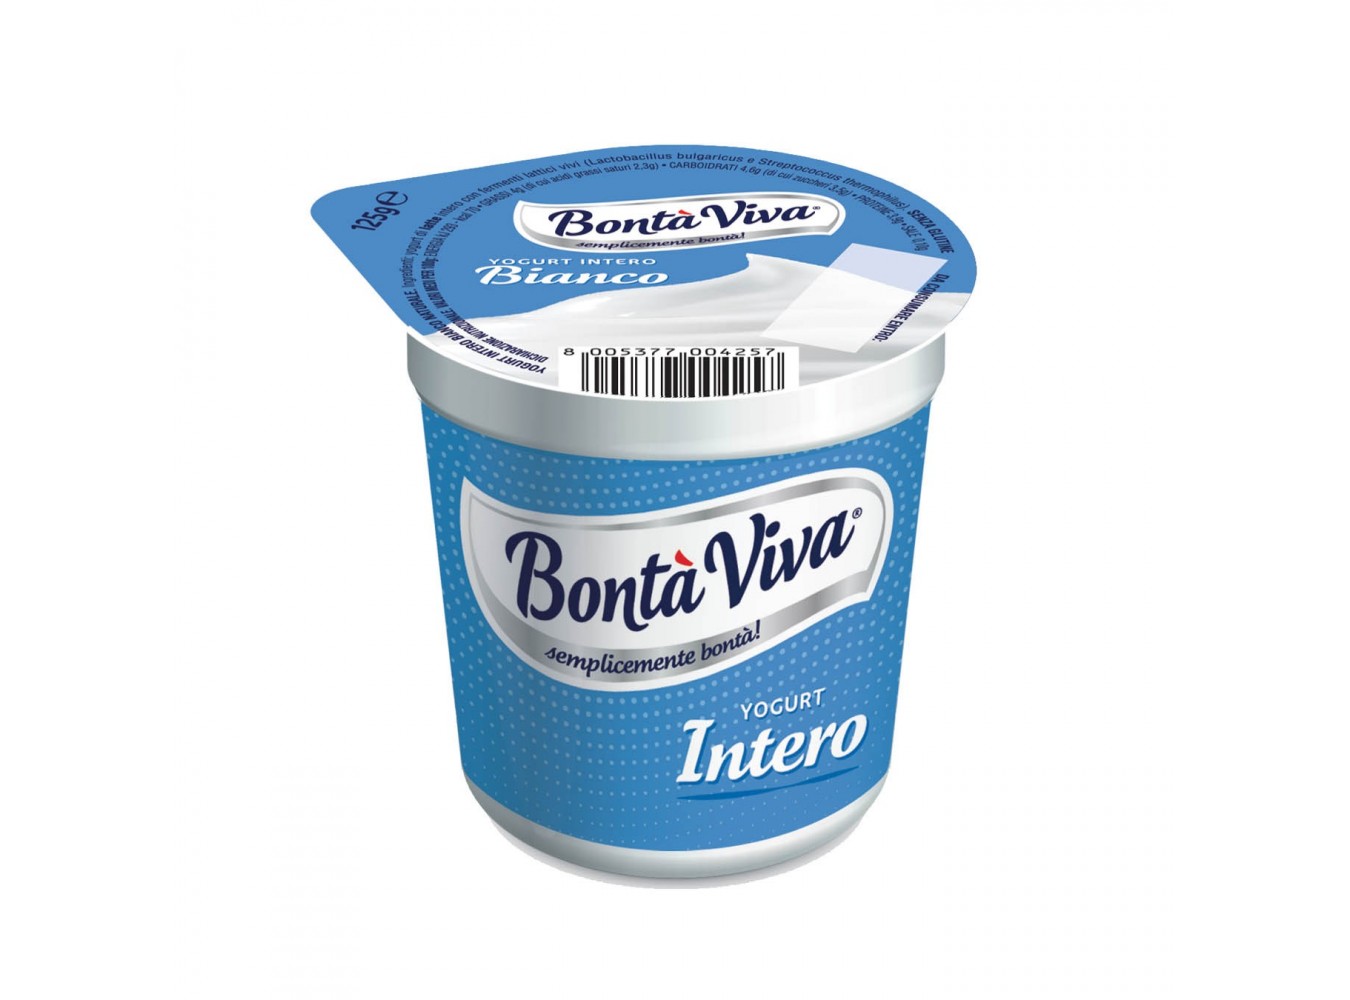 YOGURT INTERO BONTA VIVA        GR125X20